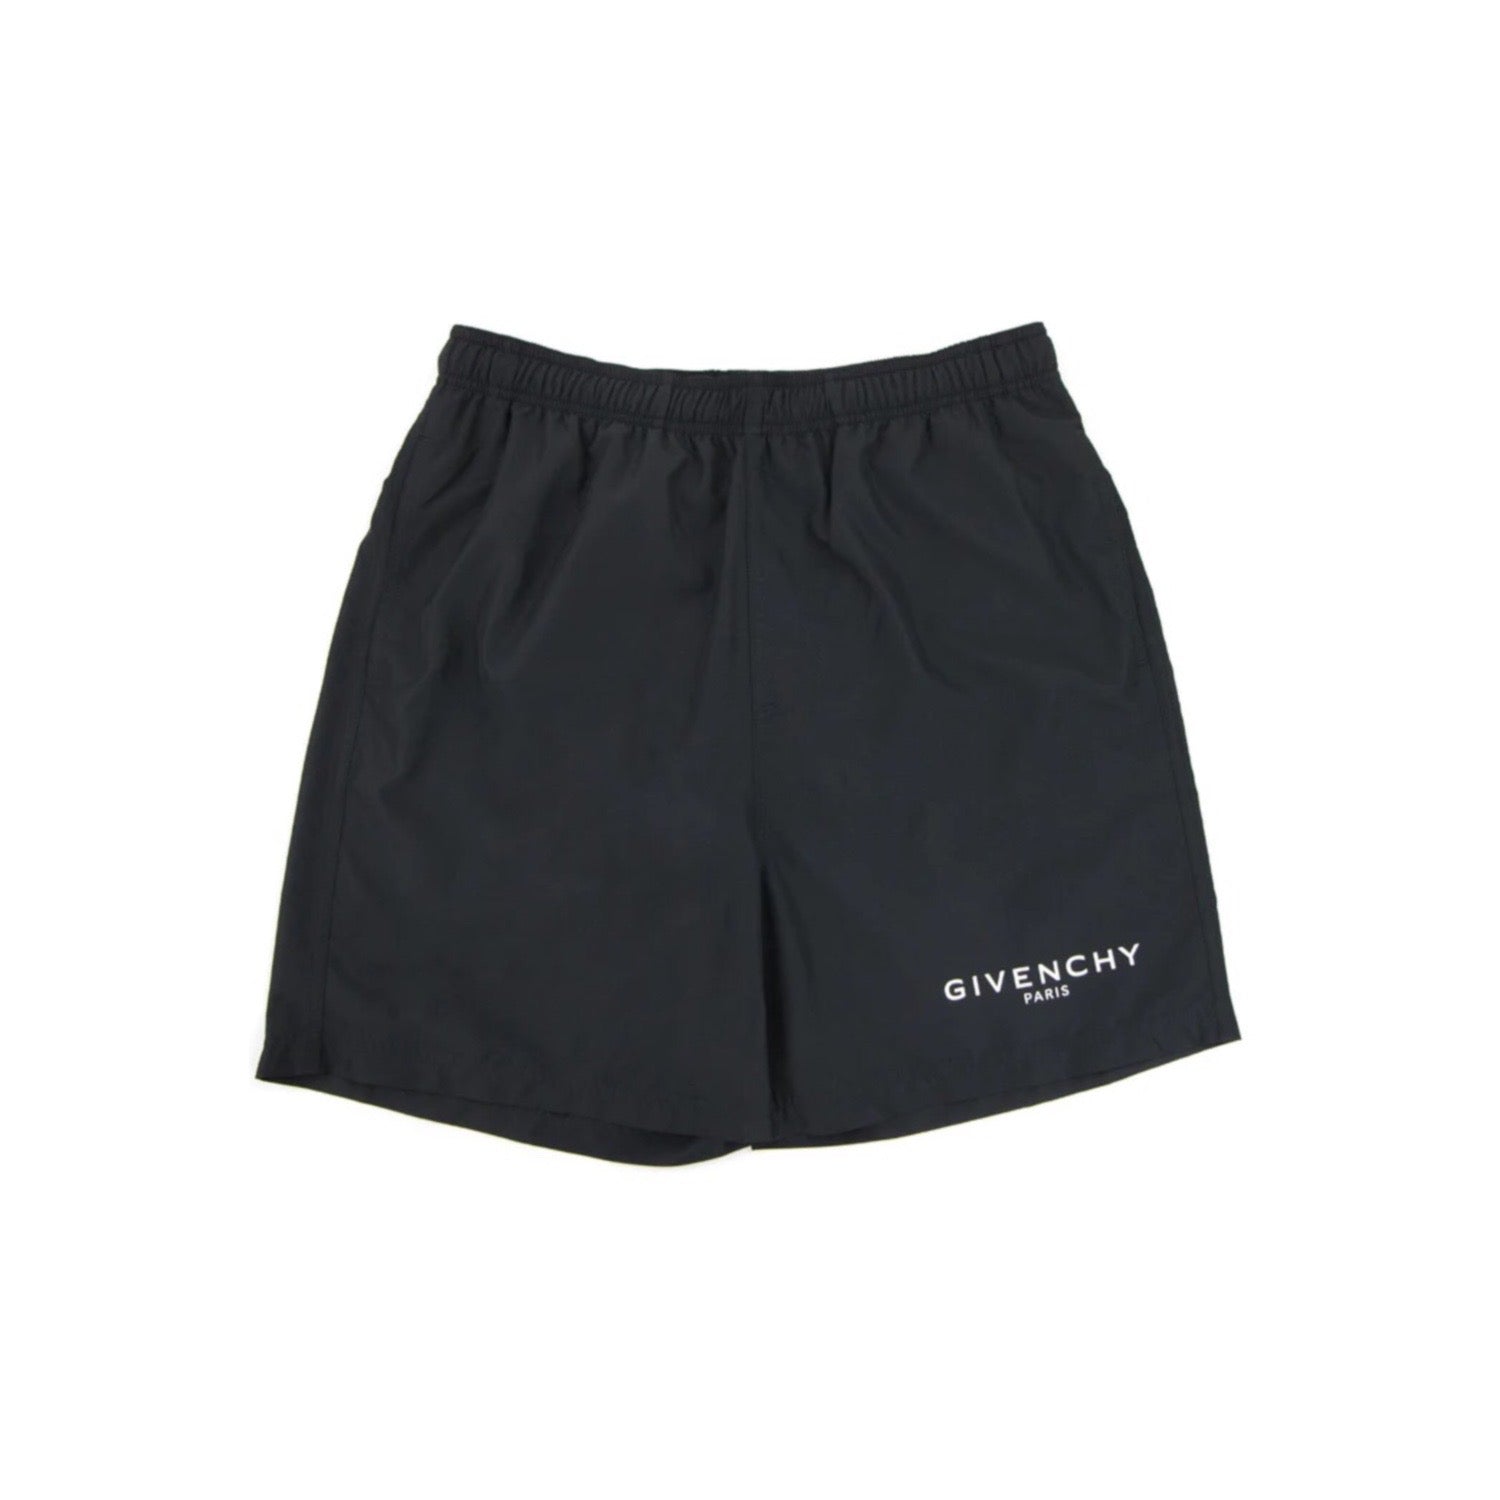 Givenchy Short Swim Shorts